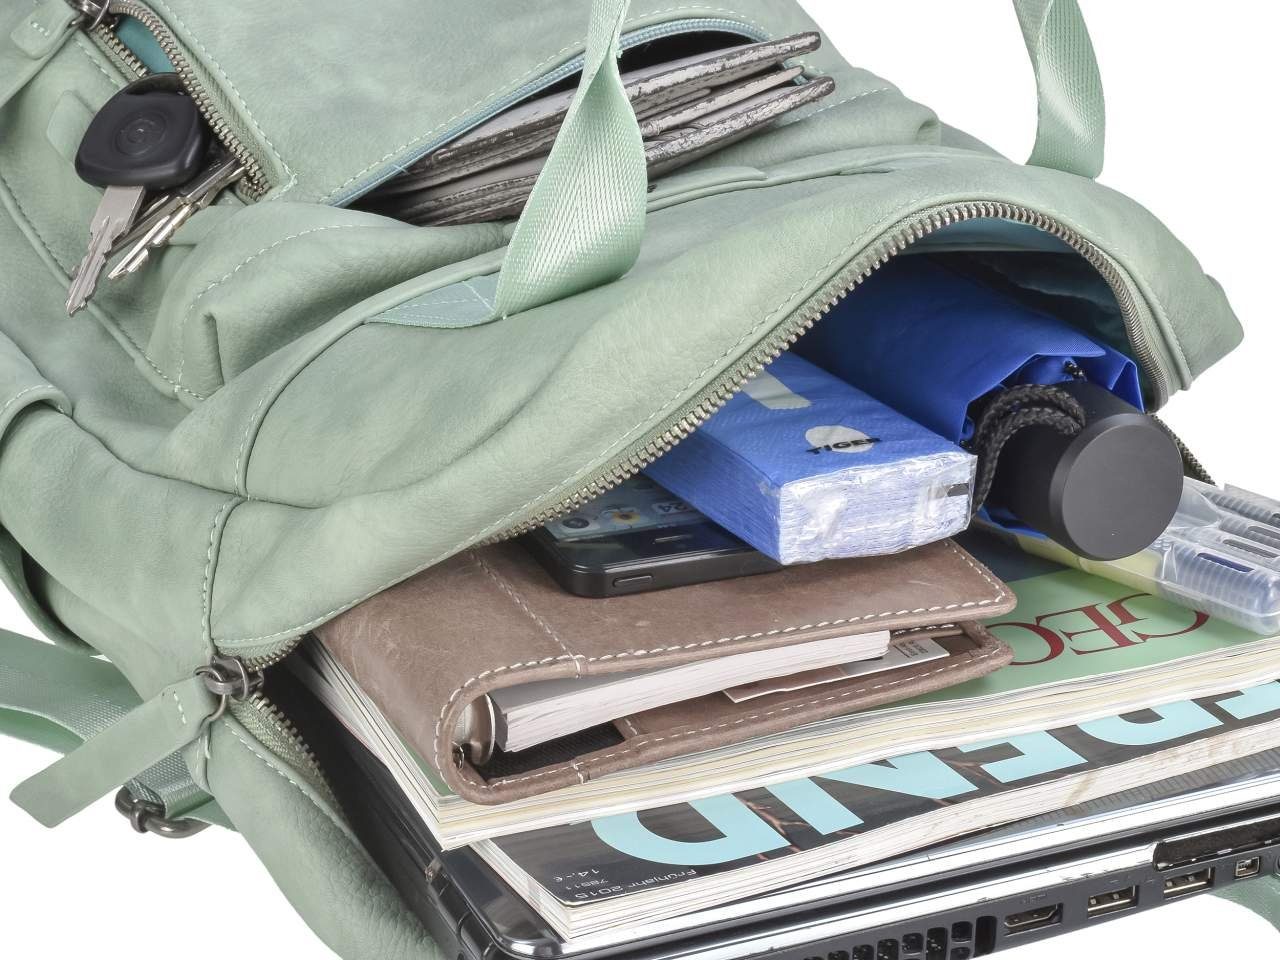 30x40cm mit Mad'l TONI Tagesrucksack, Freizeitrucksack Dasch, Damenrucksack Daypack mint Greenburry Notebookfach,